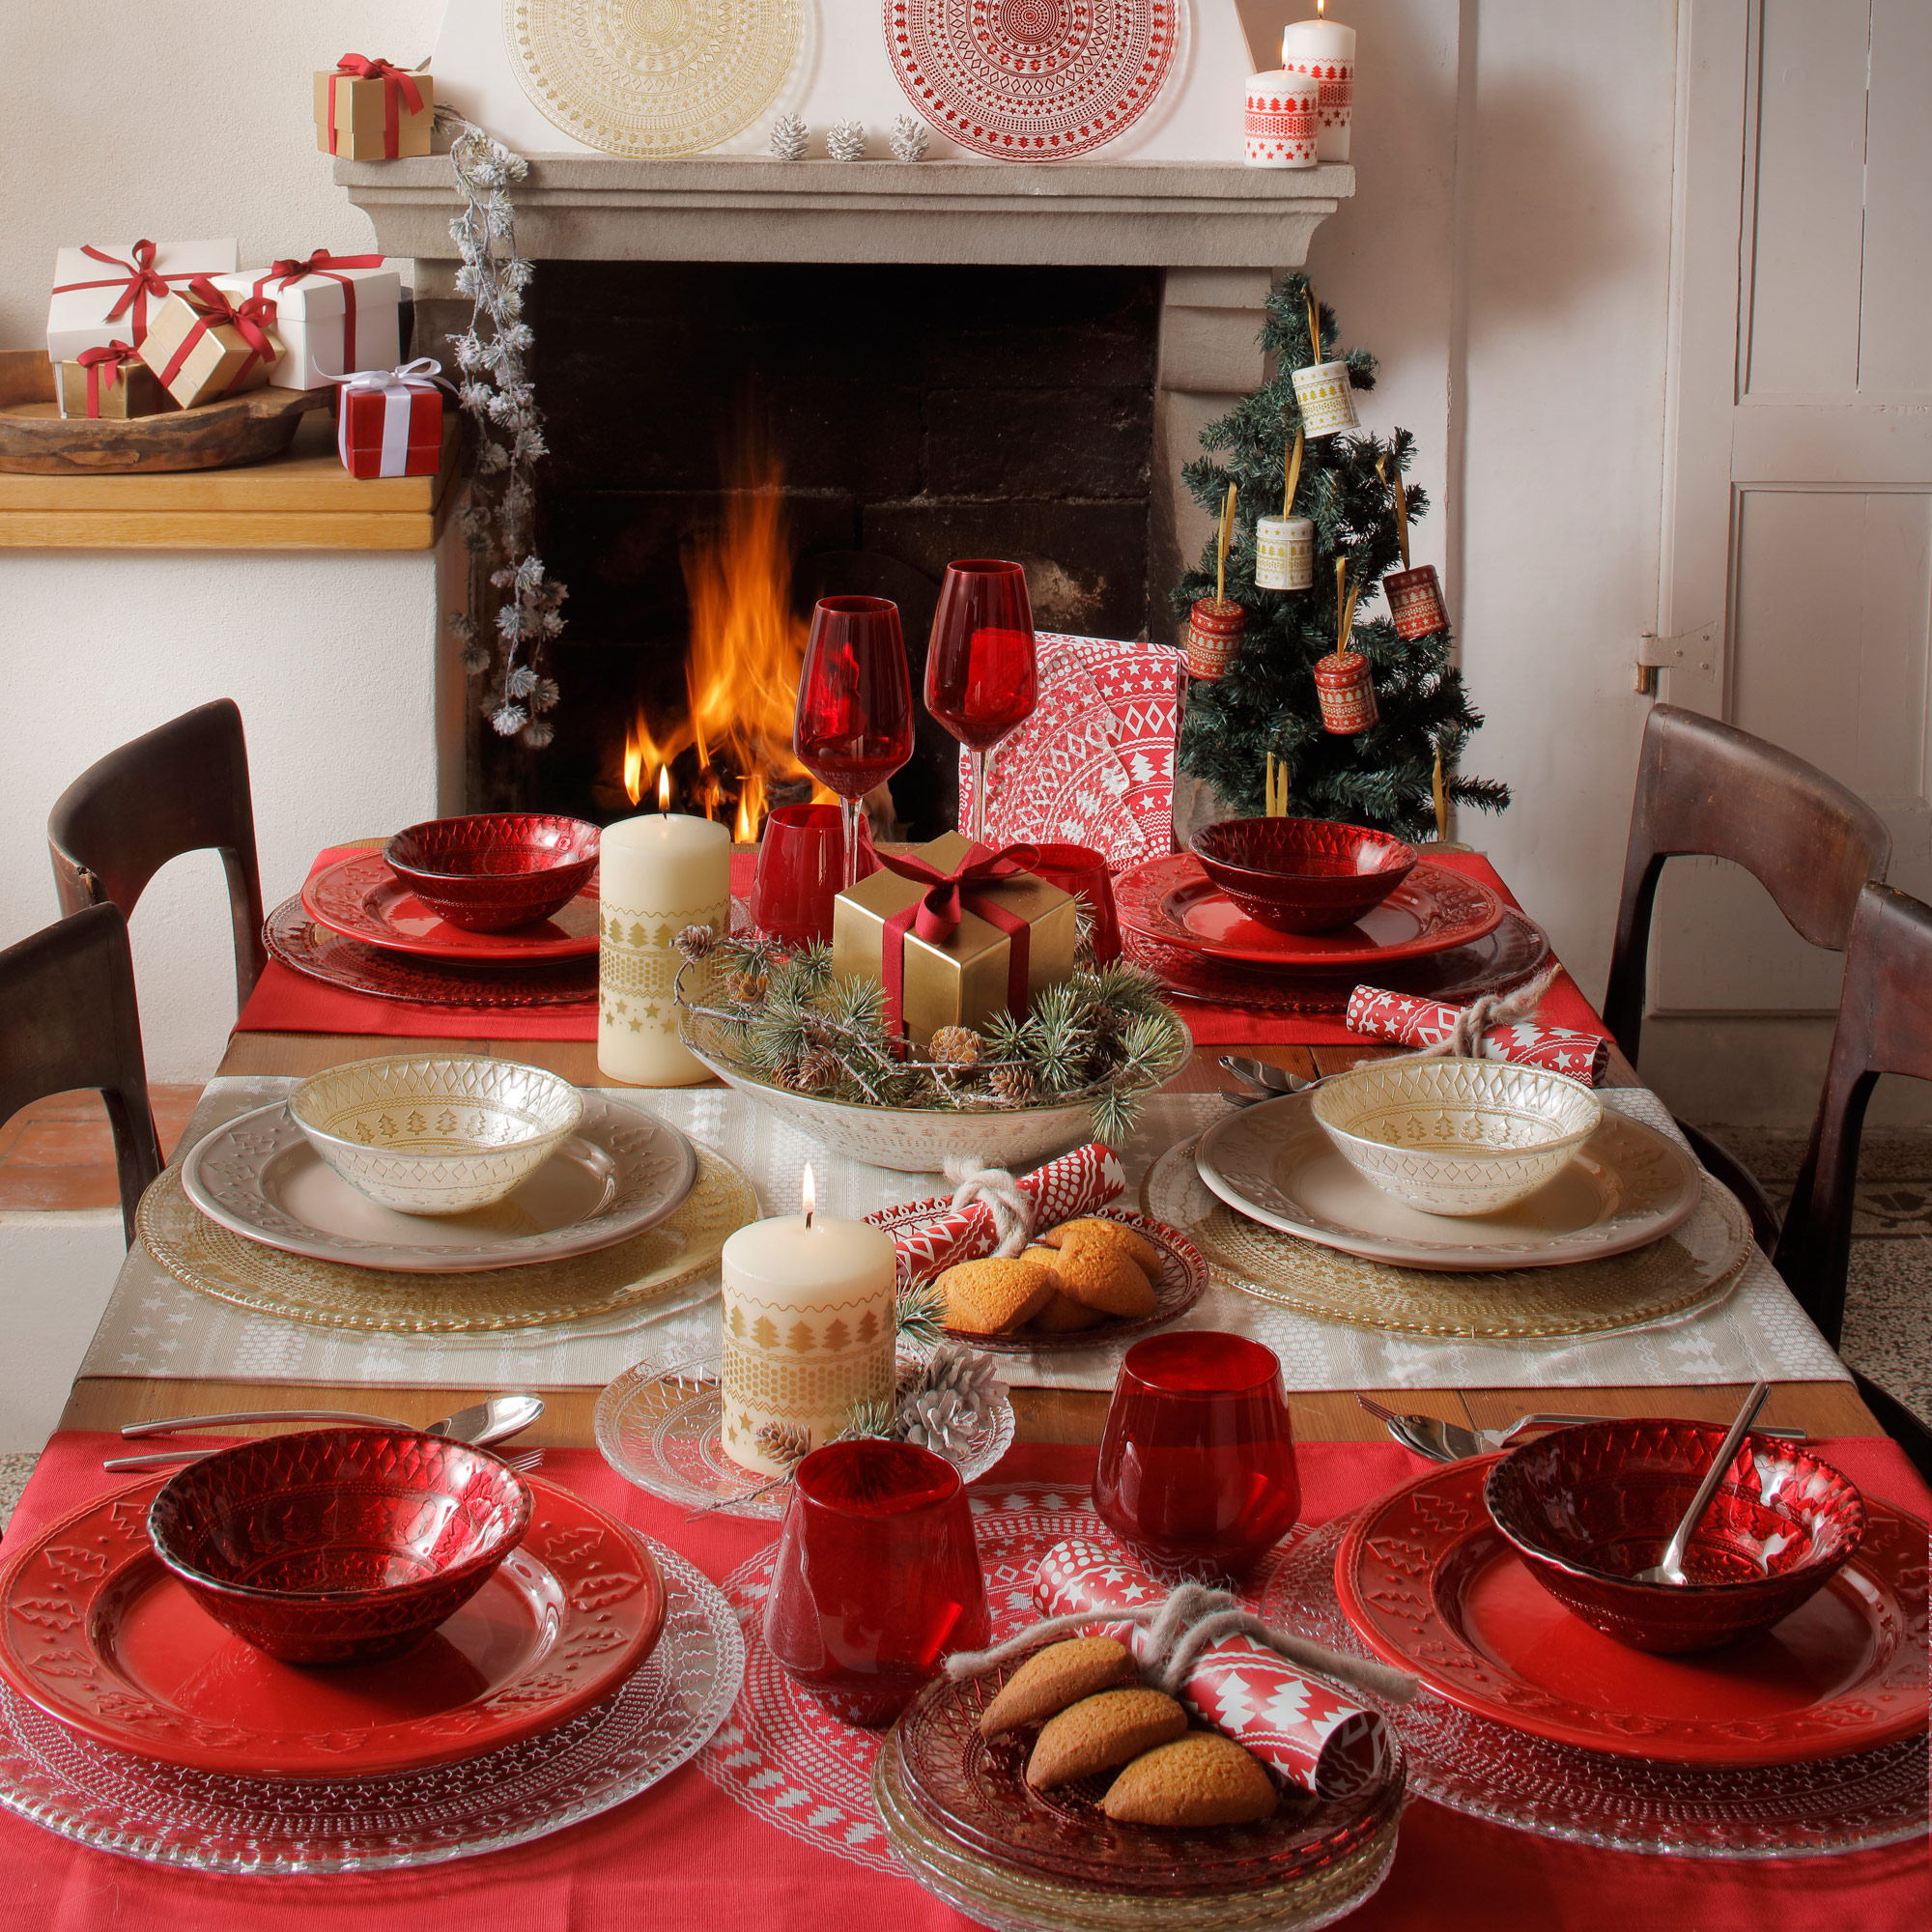 tavola natalizia addobbata con accessori e piatti ivv sulo sfondo il caminetto acceso